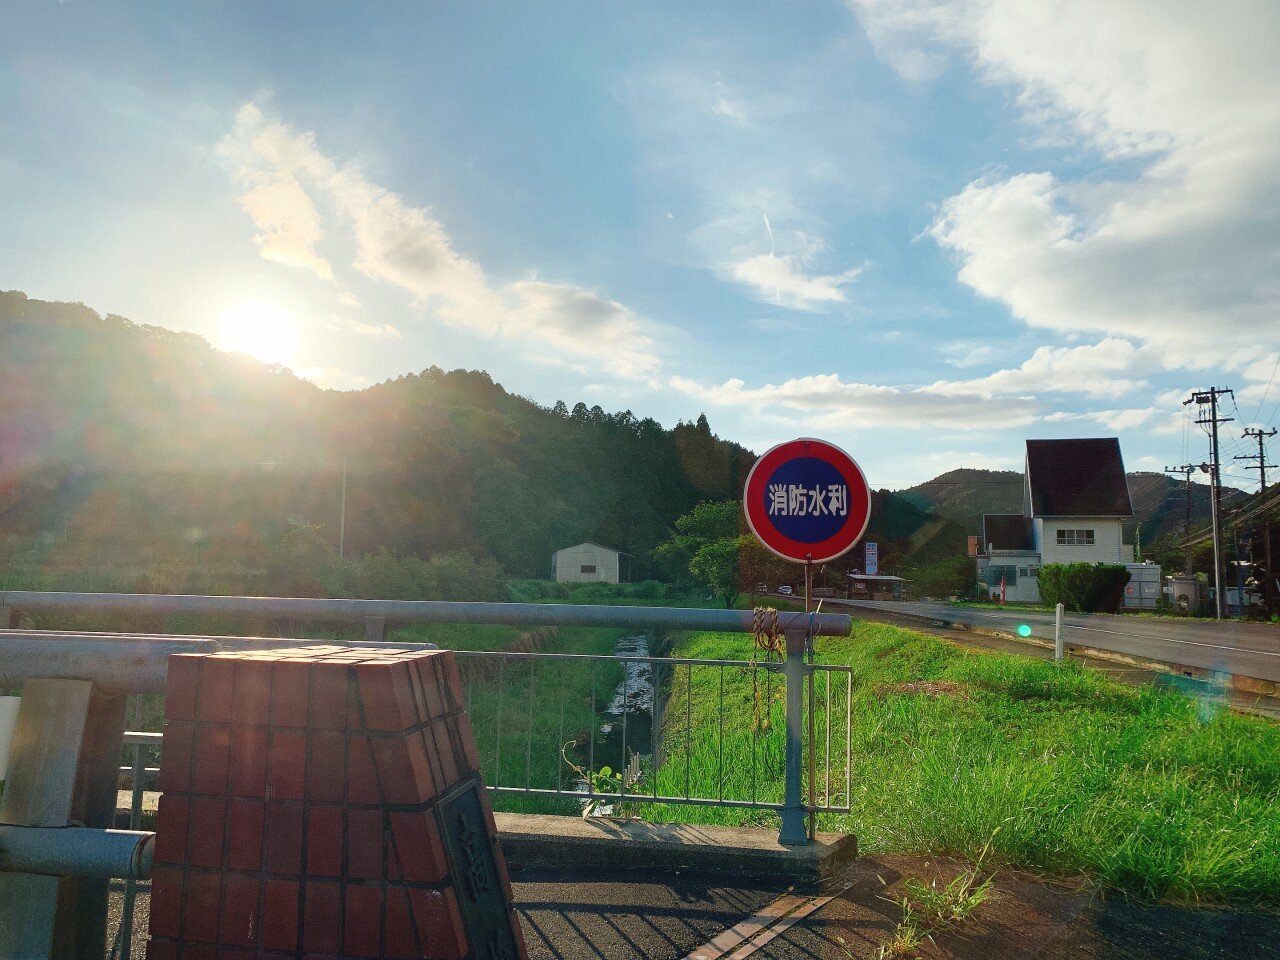 IMG_0573.JPG 스압,대자연사진만多)오사카>시골 시가로 단기 출장 2개월간의 생활기..